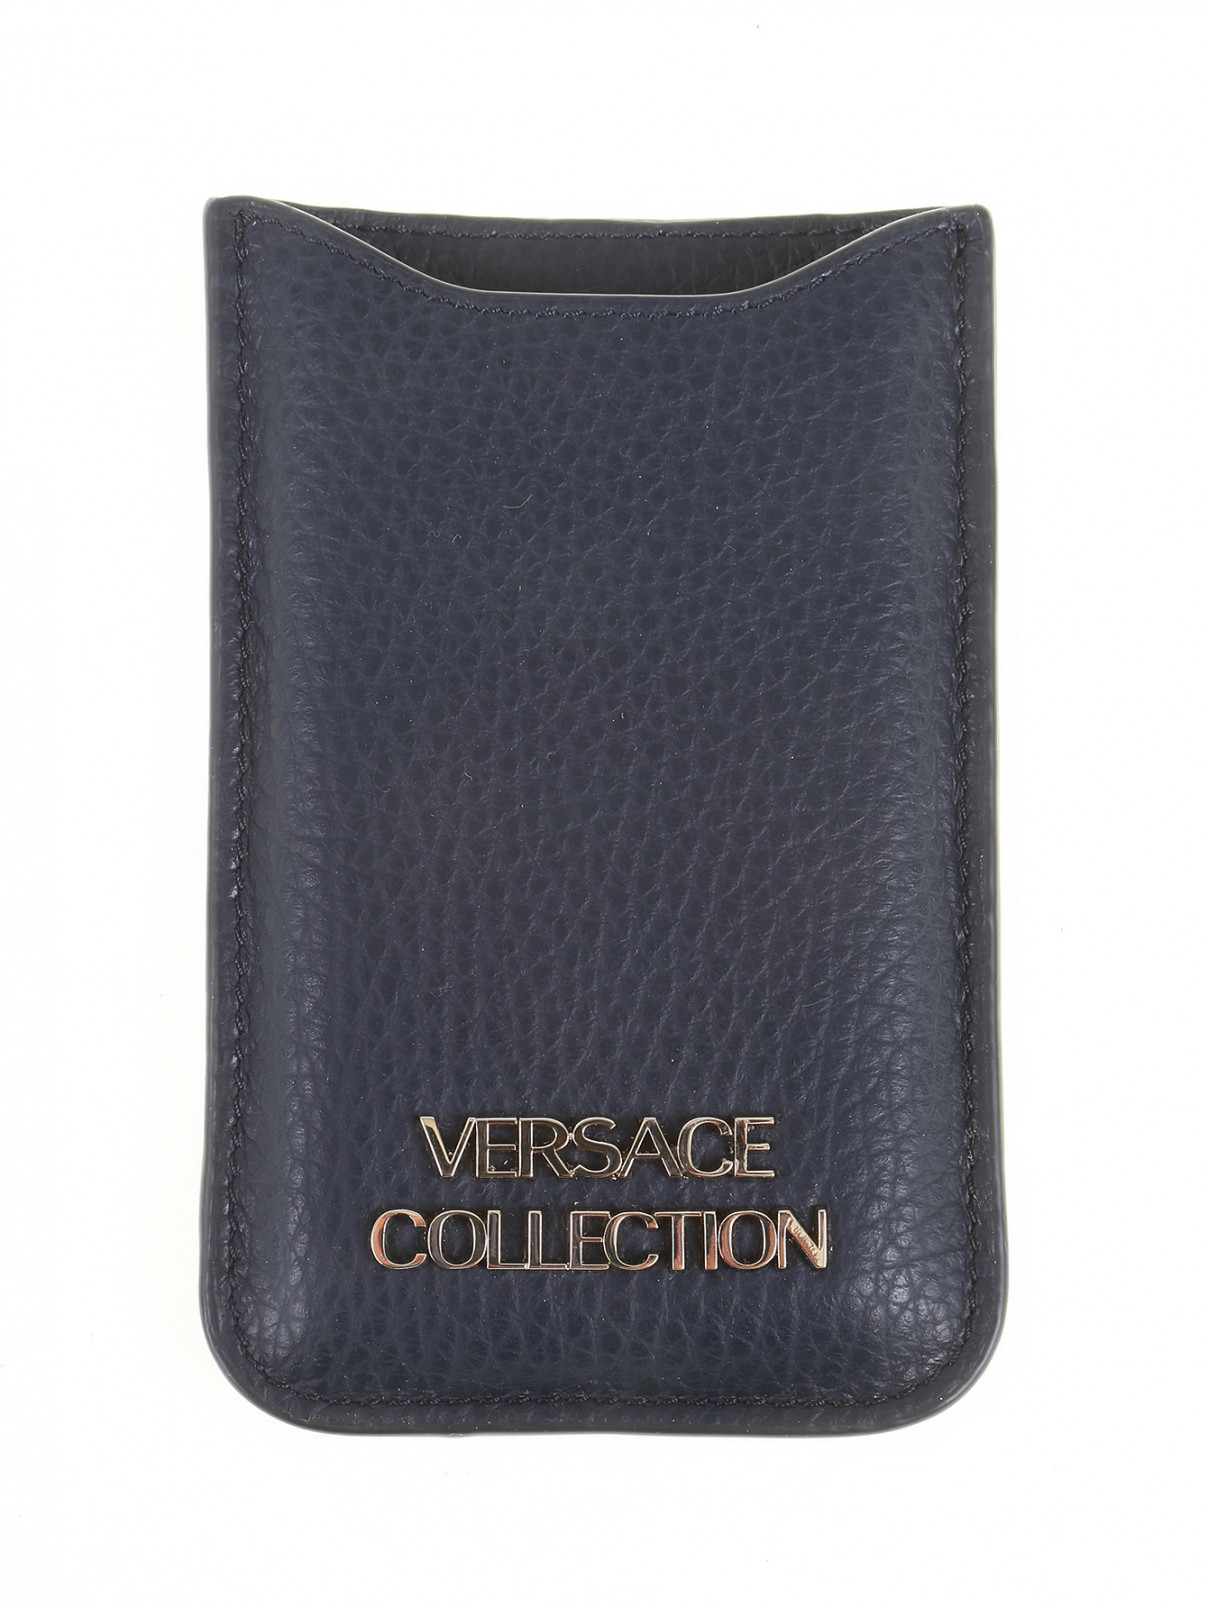 Чехол из кожи для iPhone 5 Versace Collection  –  Общий вид  – Цвет:  Синий